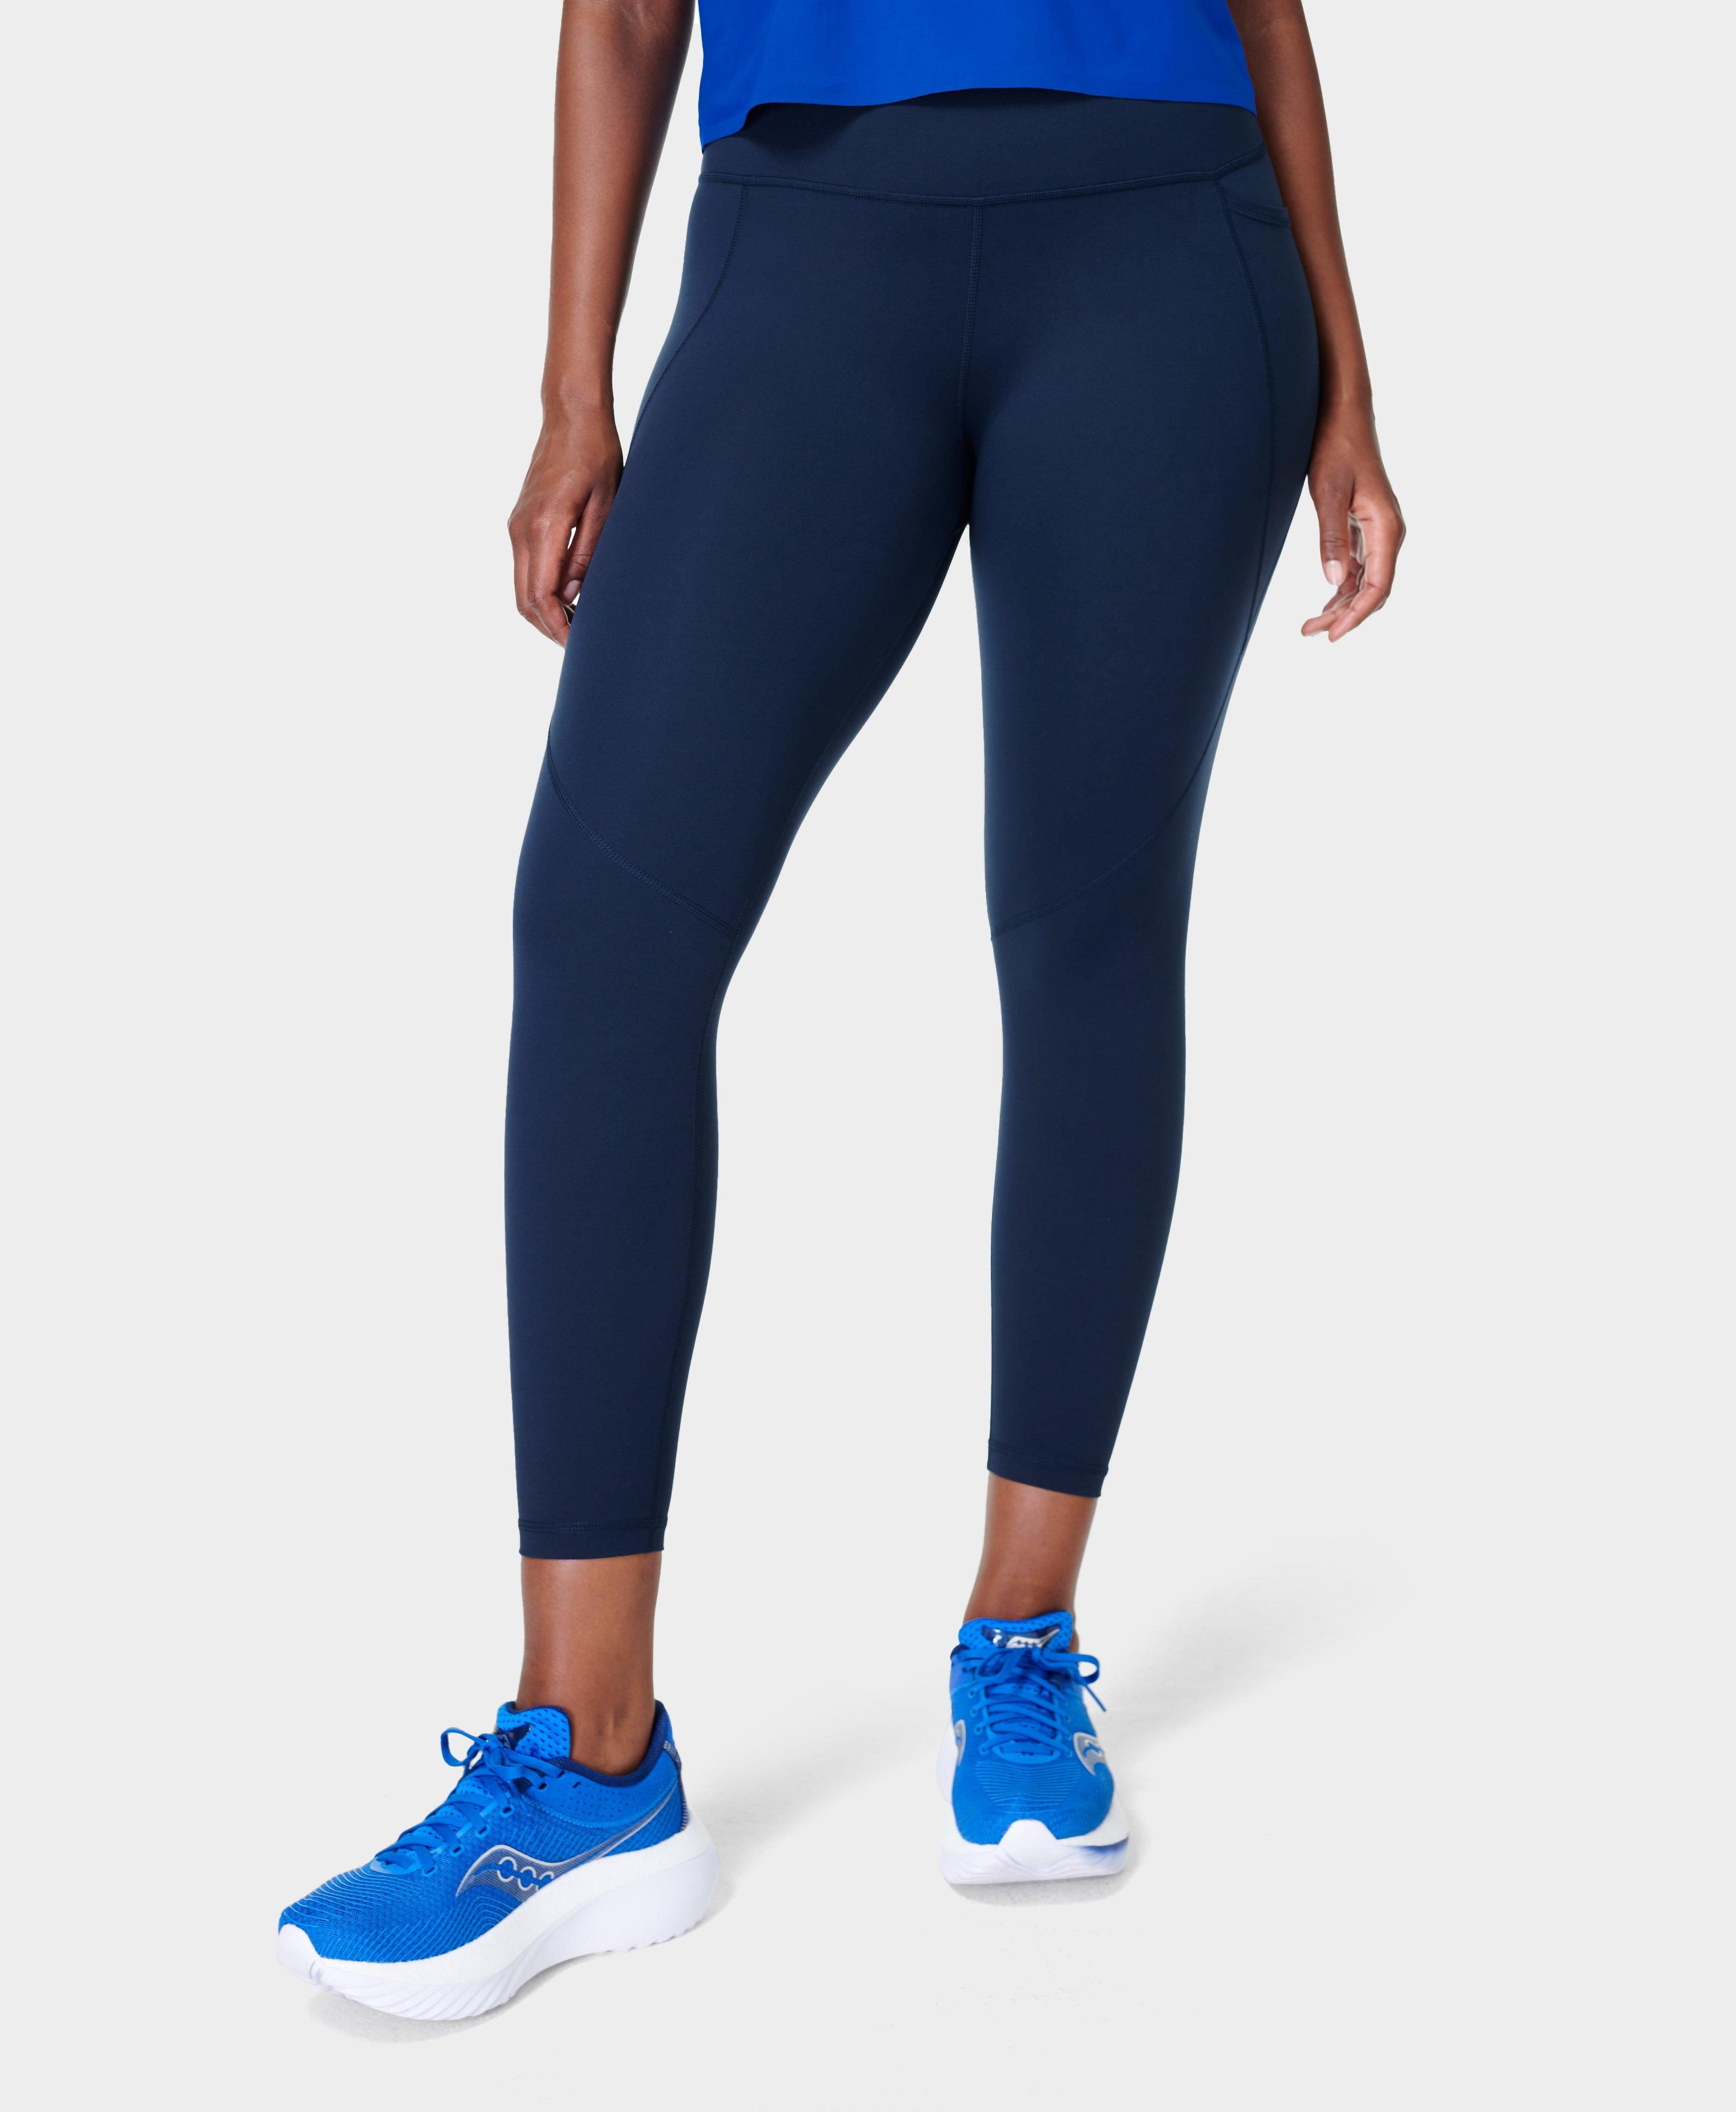 Blue Leggings - Gym Leggings for Women